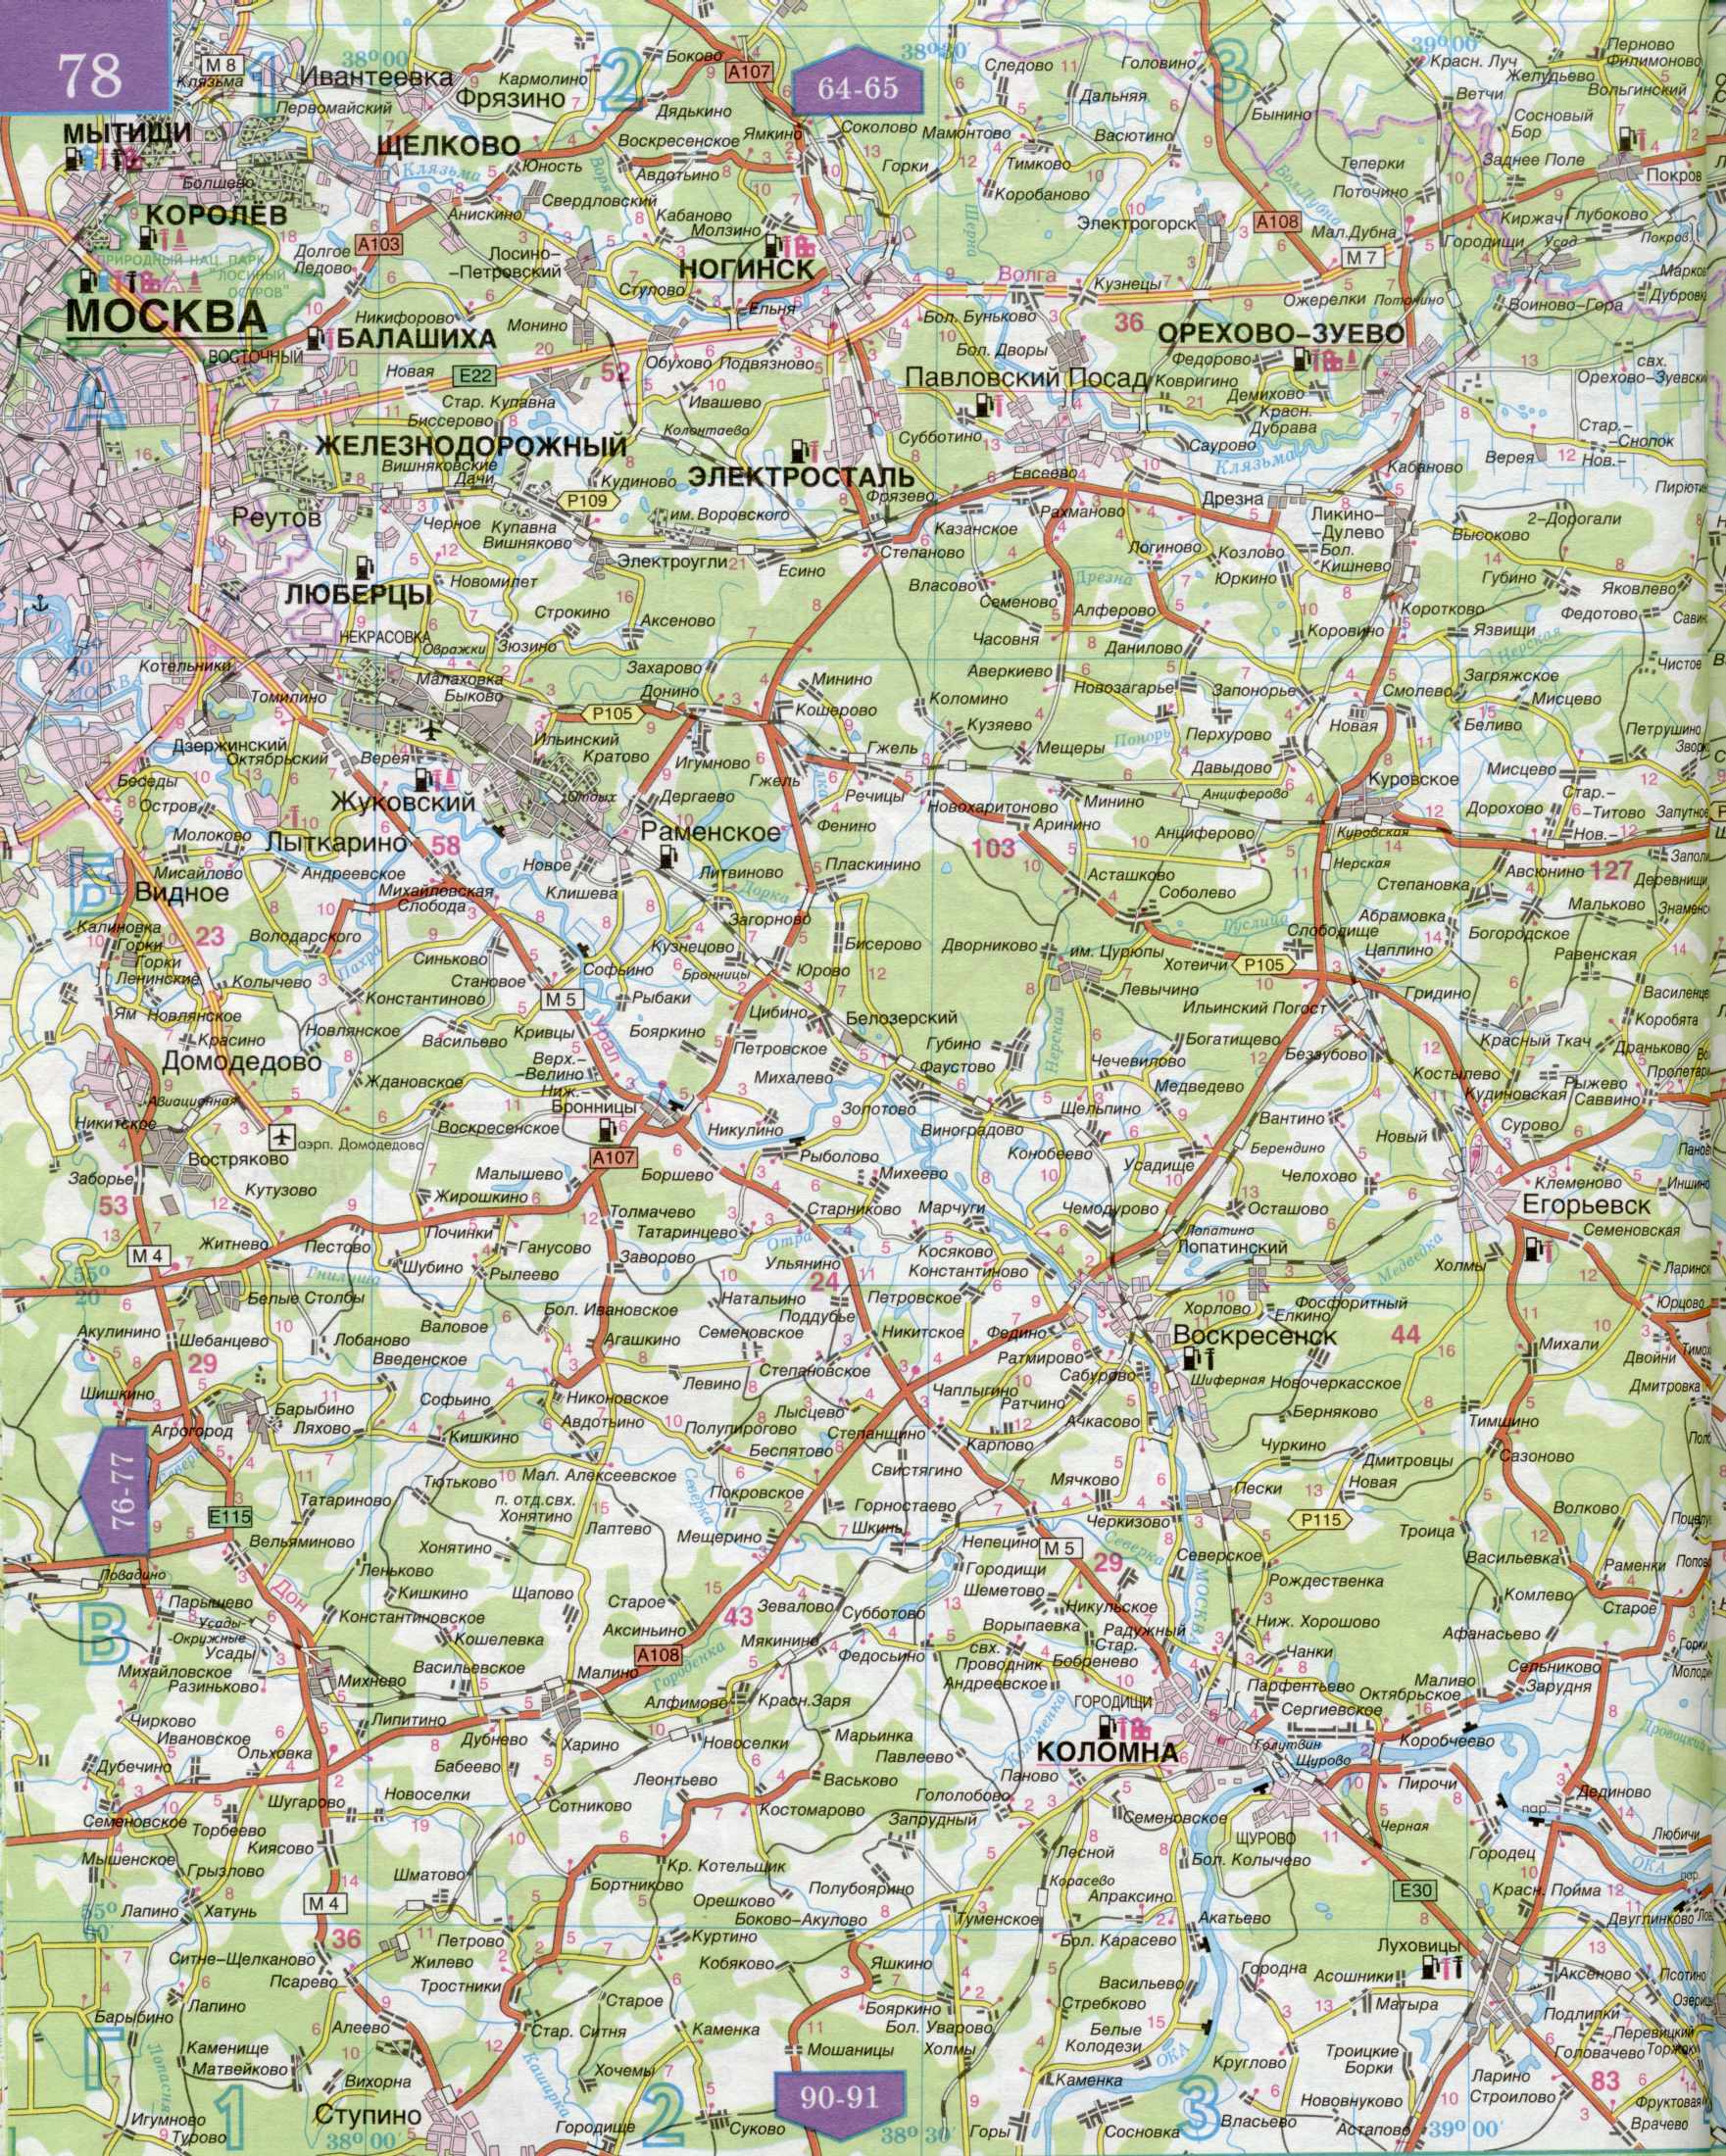 Карта автомобильных дорог Московской области 1см=5км. Подробная карта автомобильных дорог  - Московская область и прилегающие территории. Скачать бесплатно, C1 - 